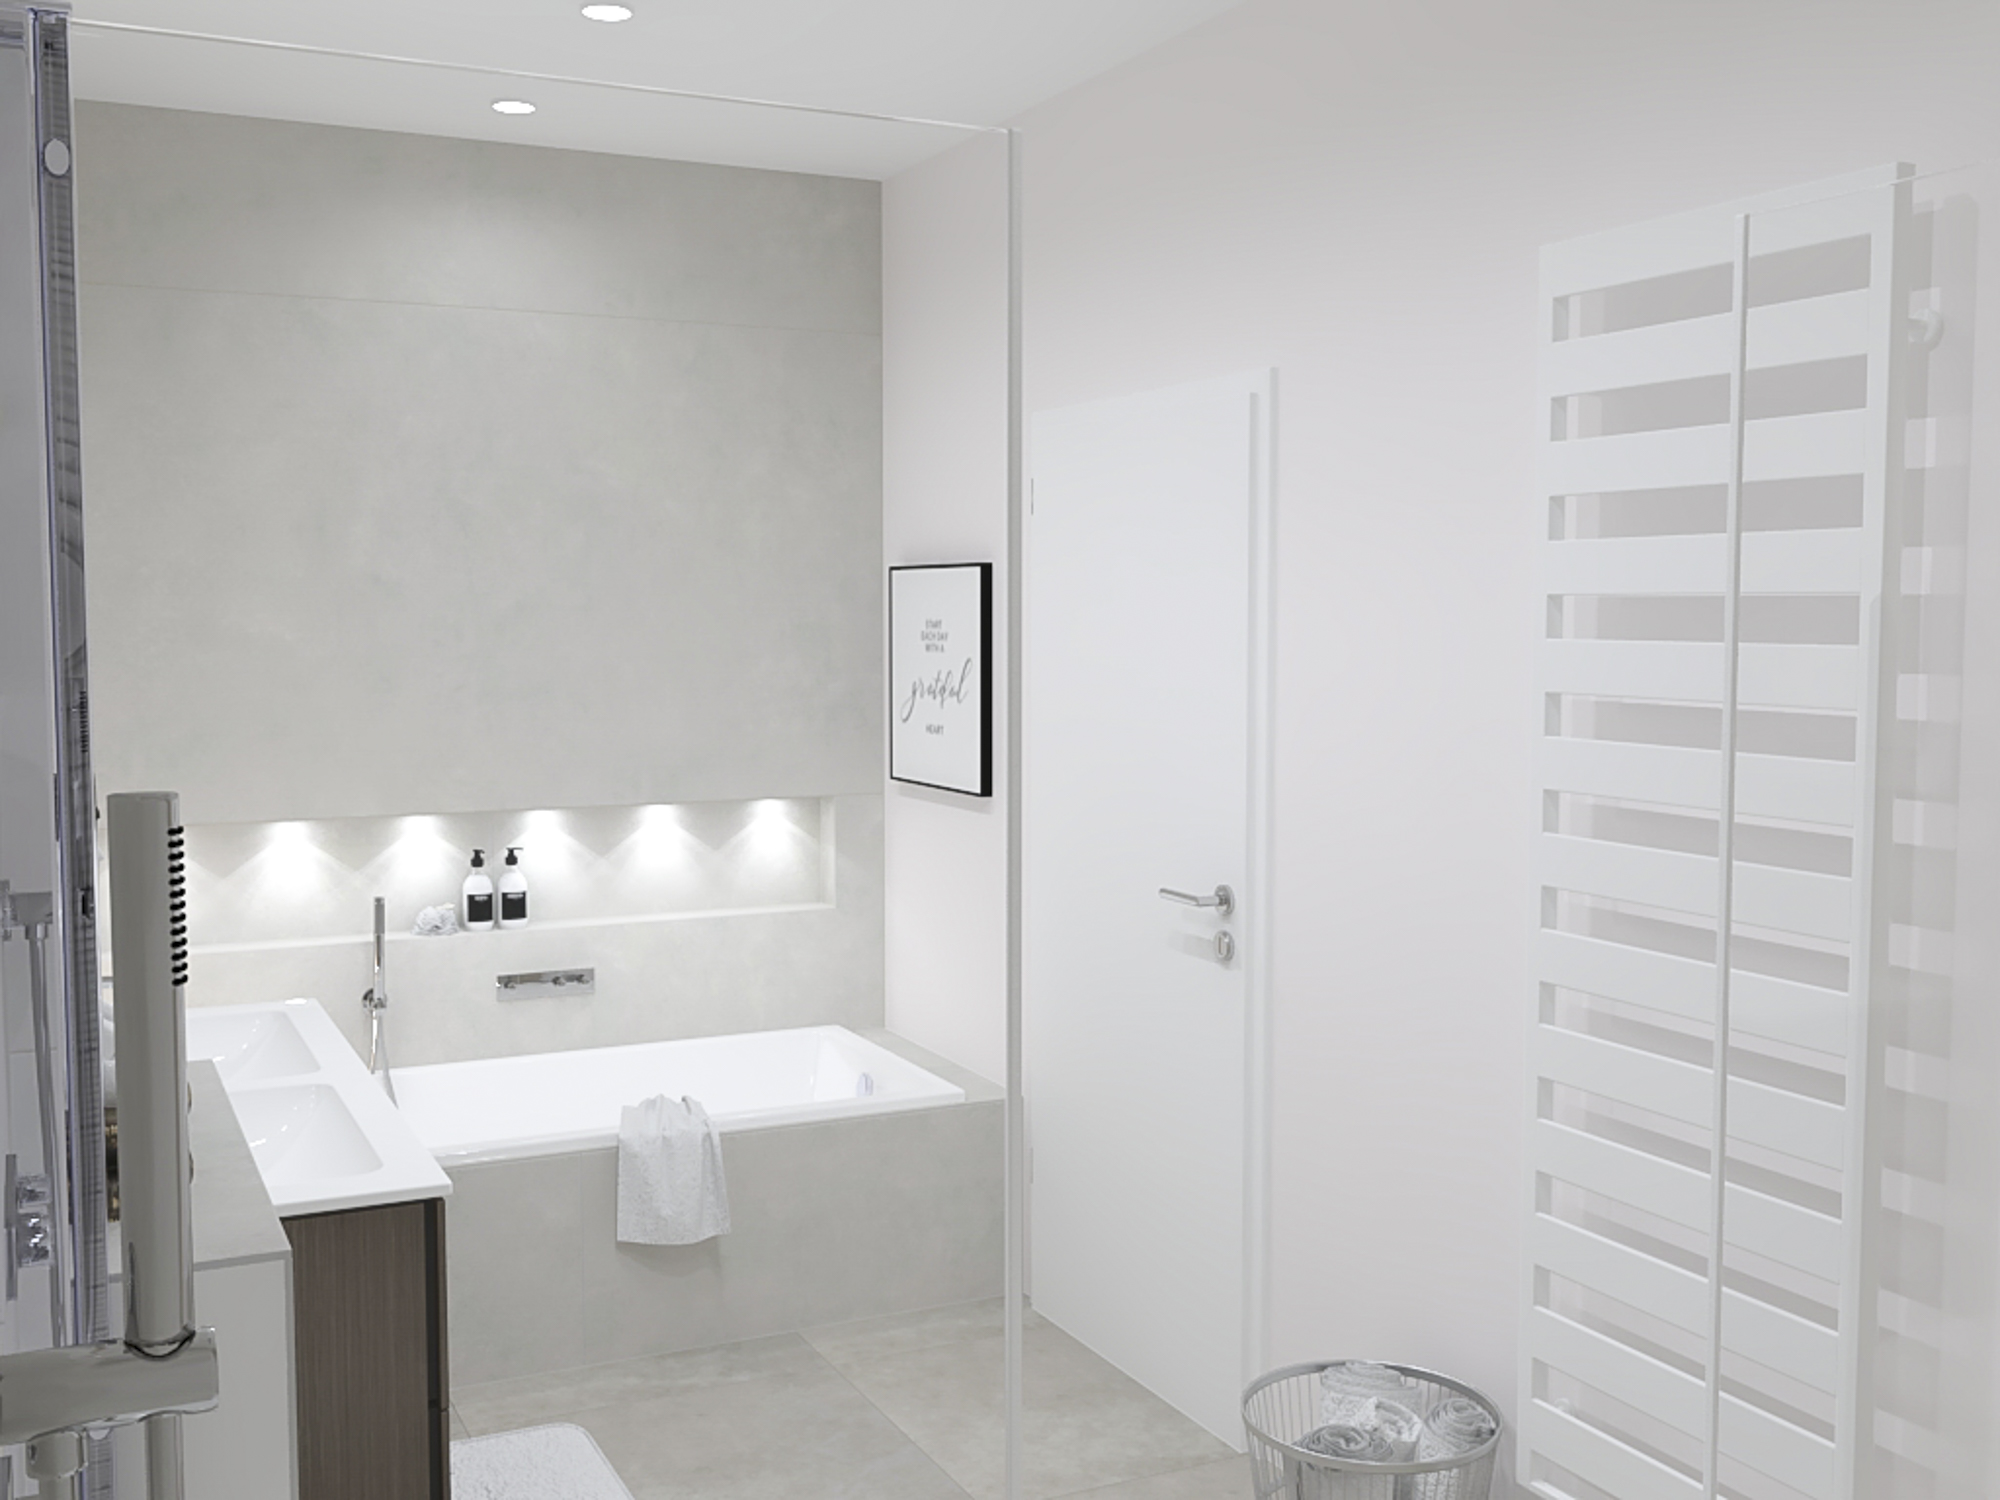 Badezimmer Planung mit Perspektive von der Dusche aus und eingebautem Deckenlicht